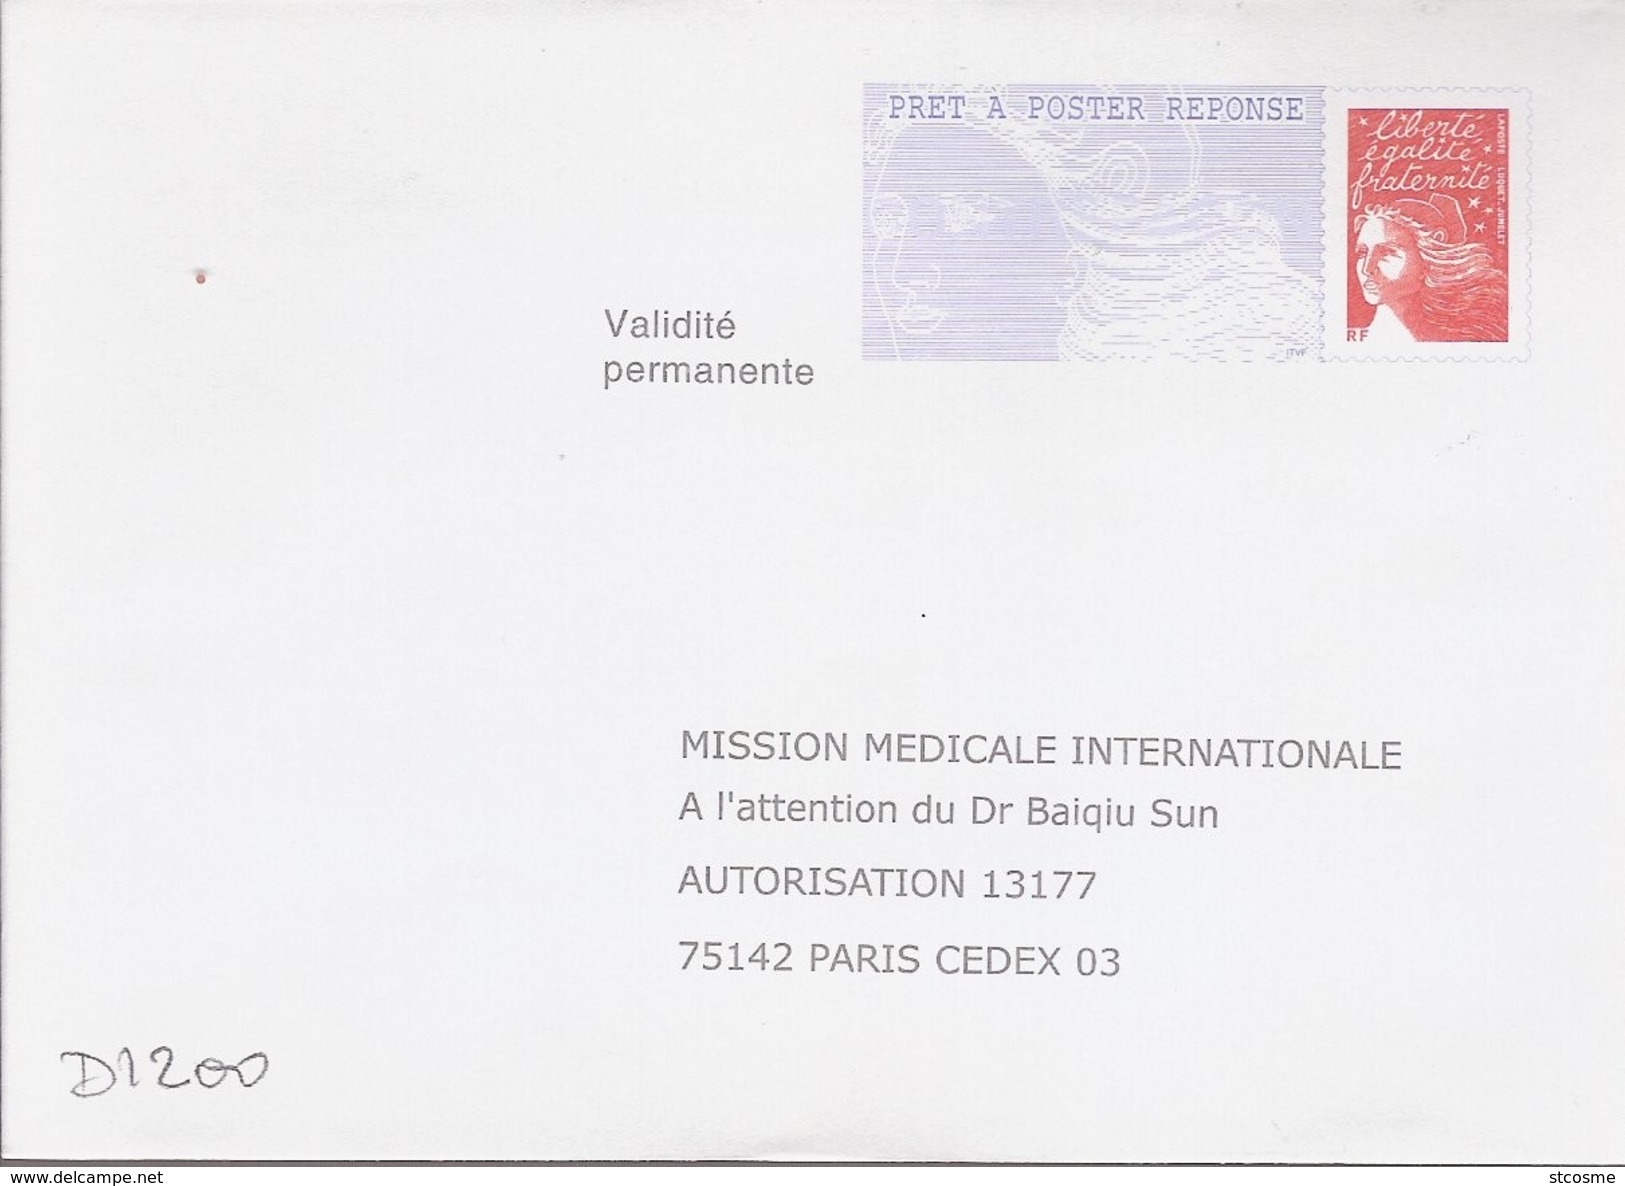 D1200 Entier / Stationery / PSE - PAP Réponse Luquet - Mission Médicale Internationale - N° D'agrément 0204500 - PAP: Antwort/Luquet